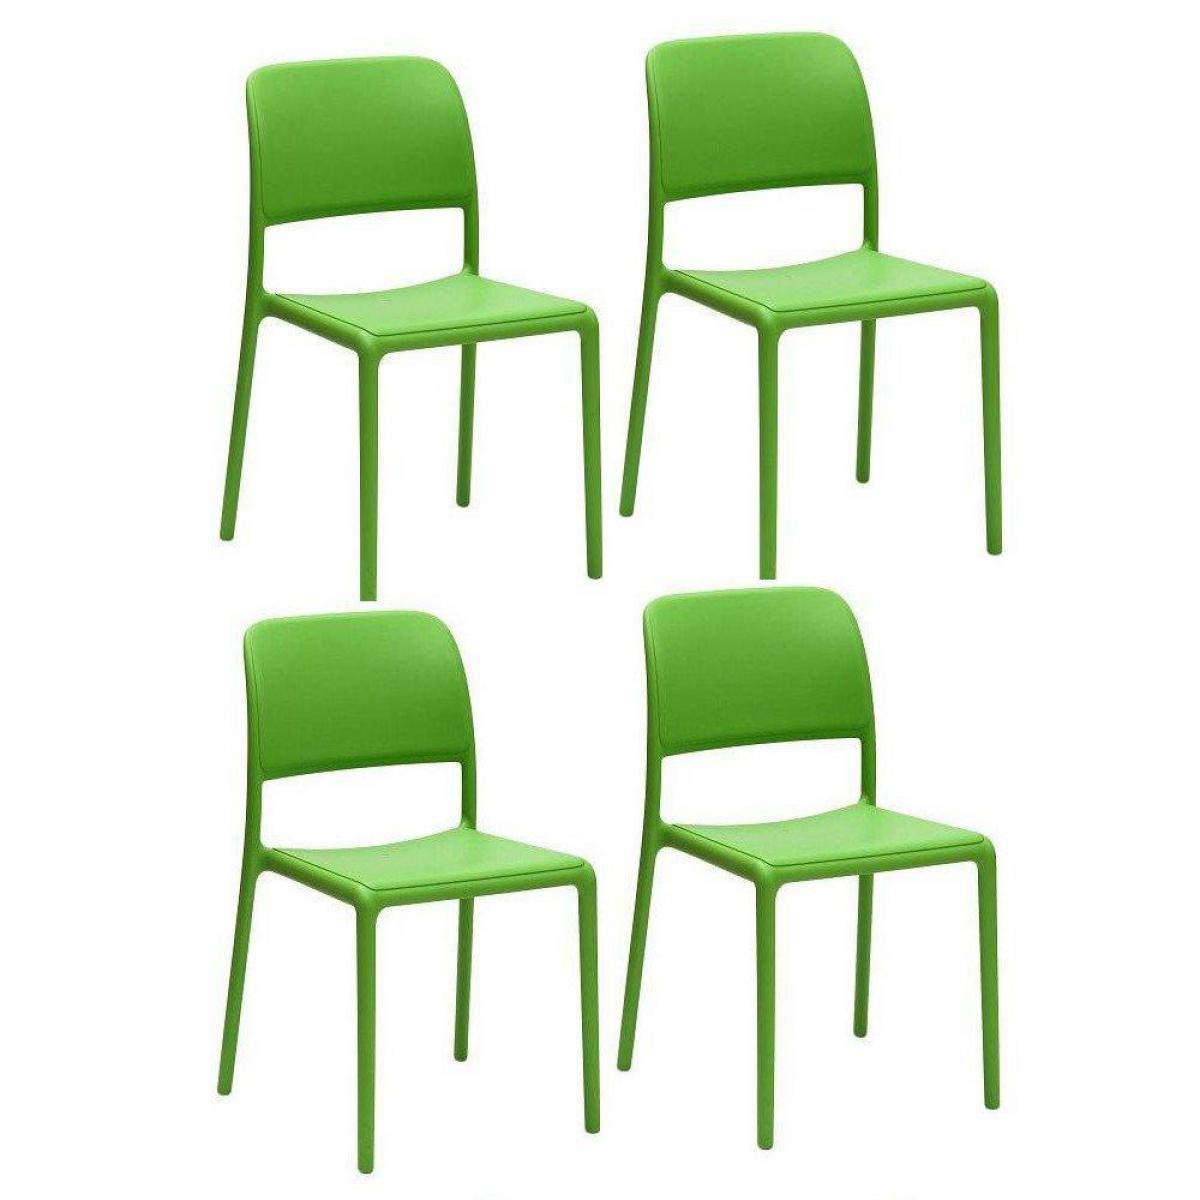 Inside 75 - Lot de 4 chaises RIVER empilables design coloris vert. - Chaises